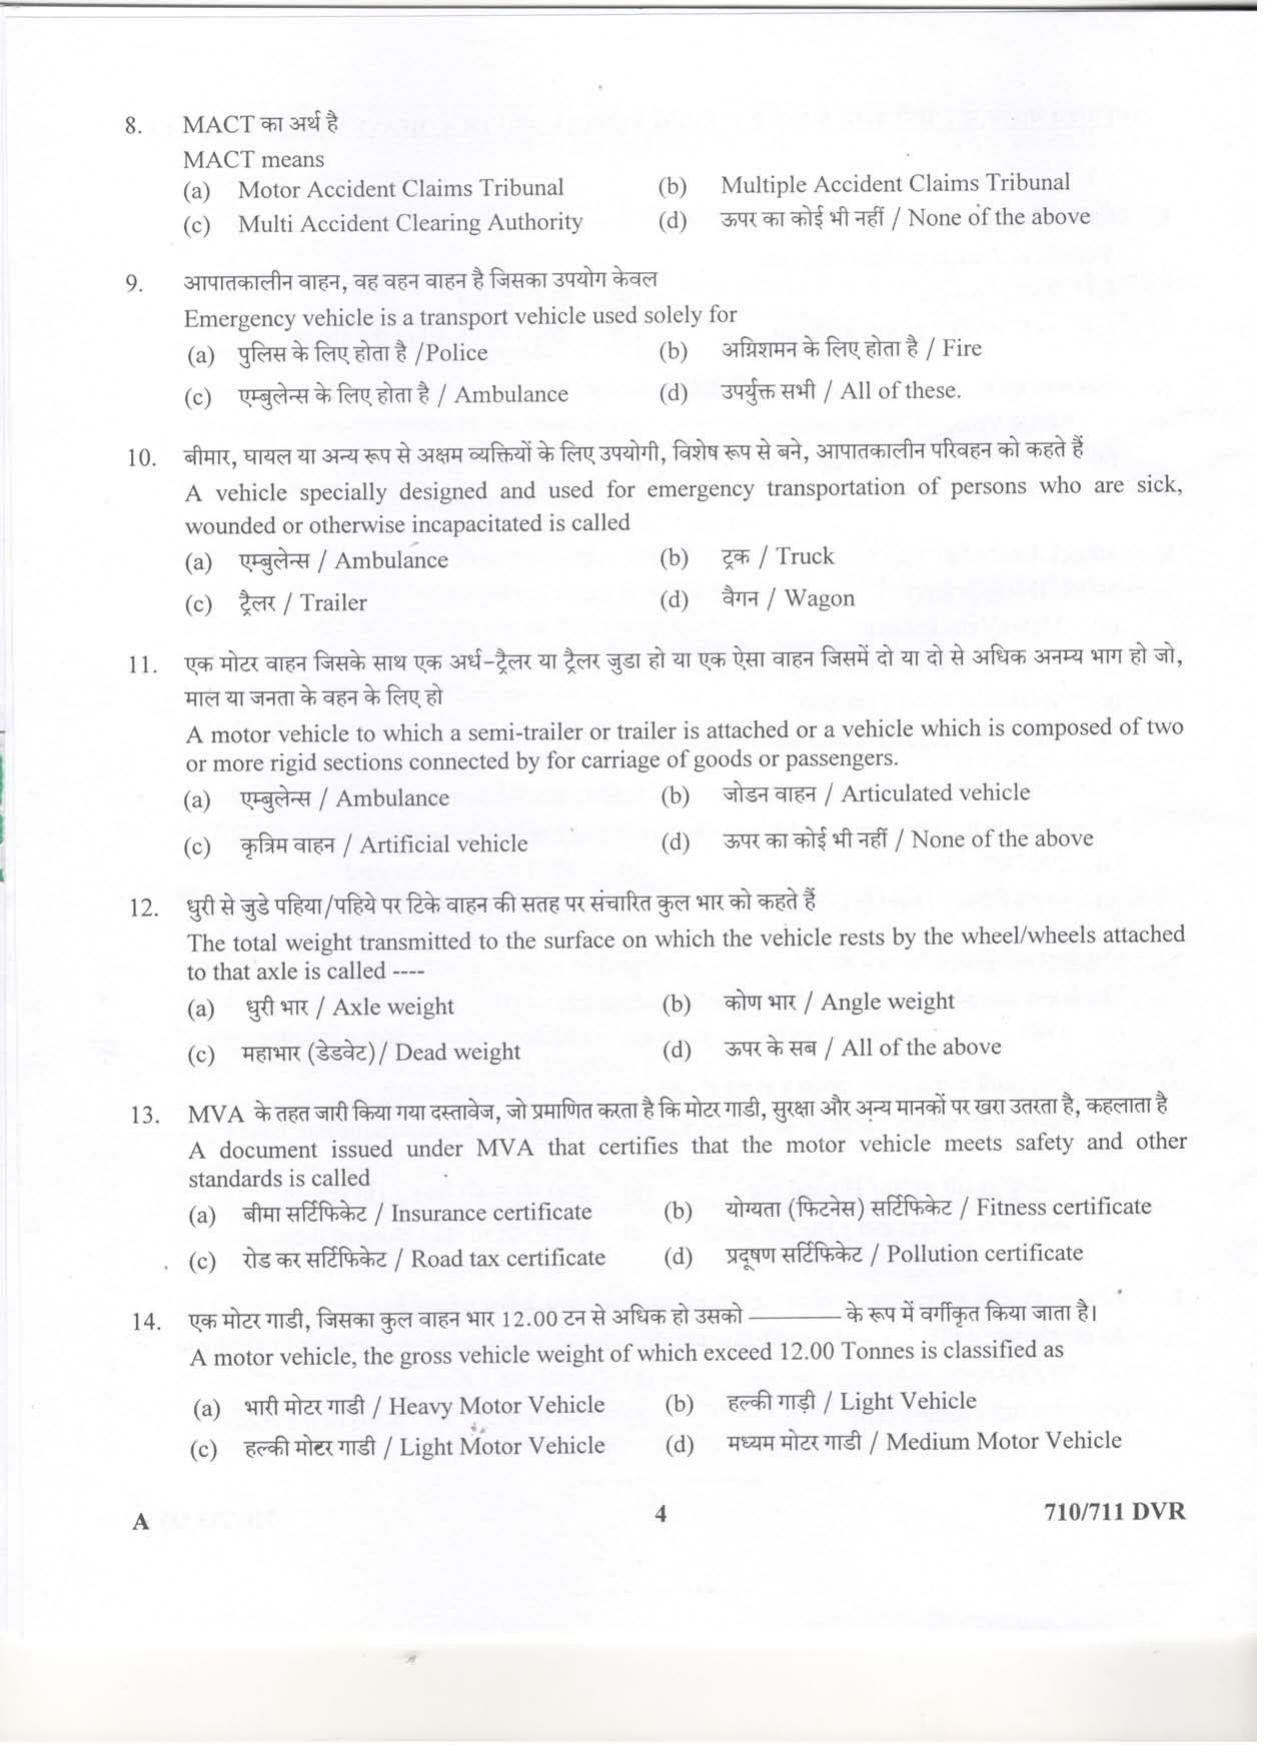 LPSC Driver (LVD/HVD) 2019 Question Paper - Page 4